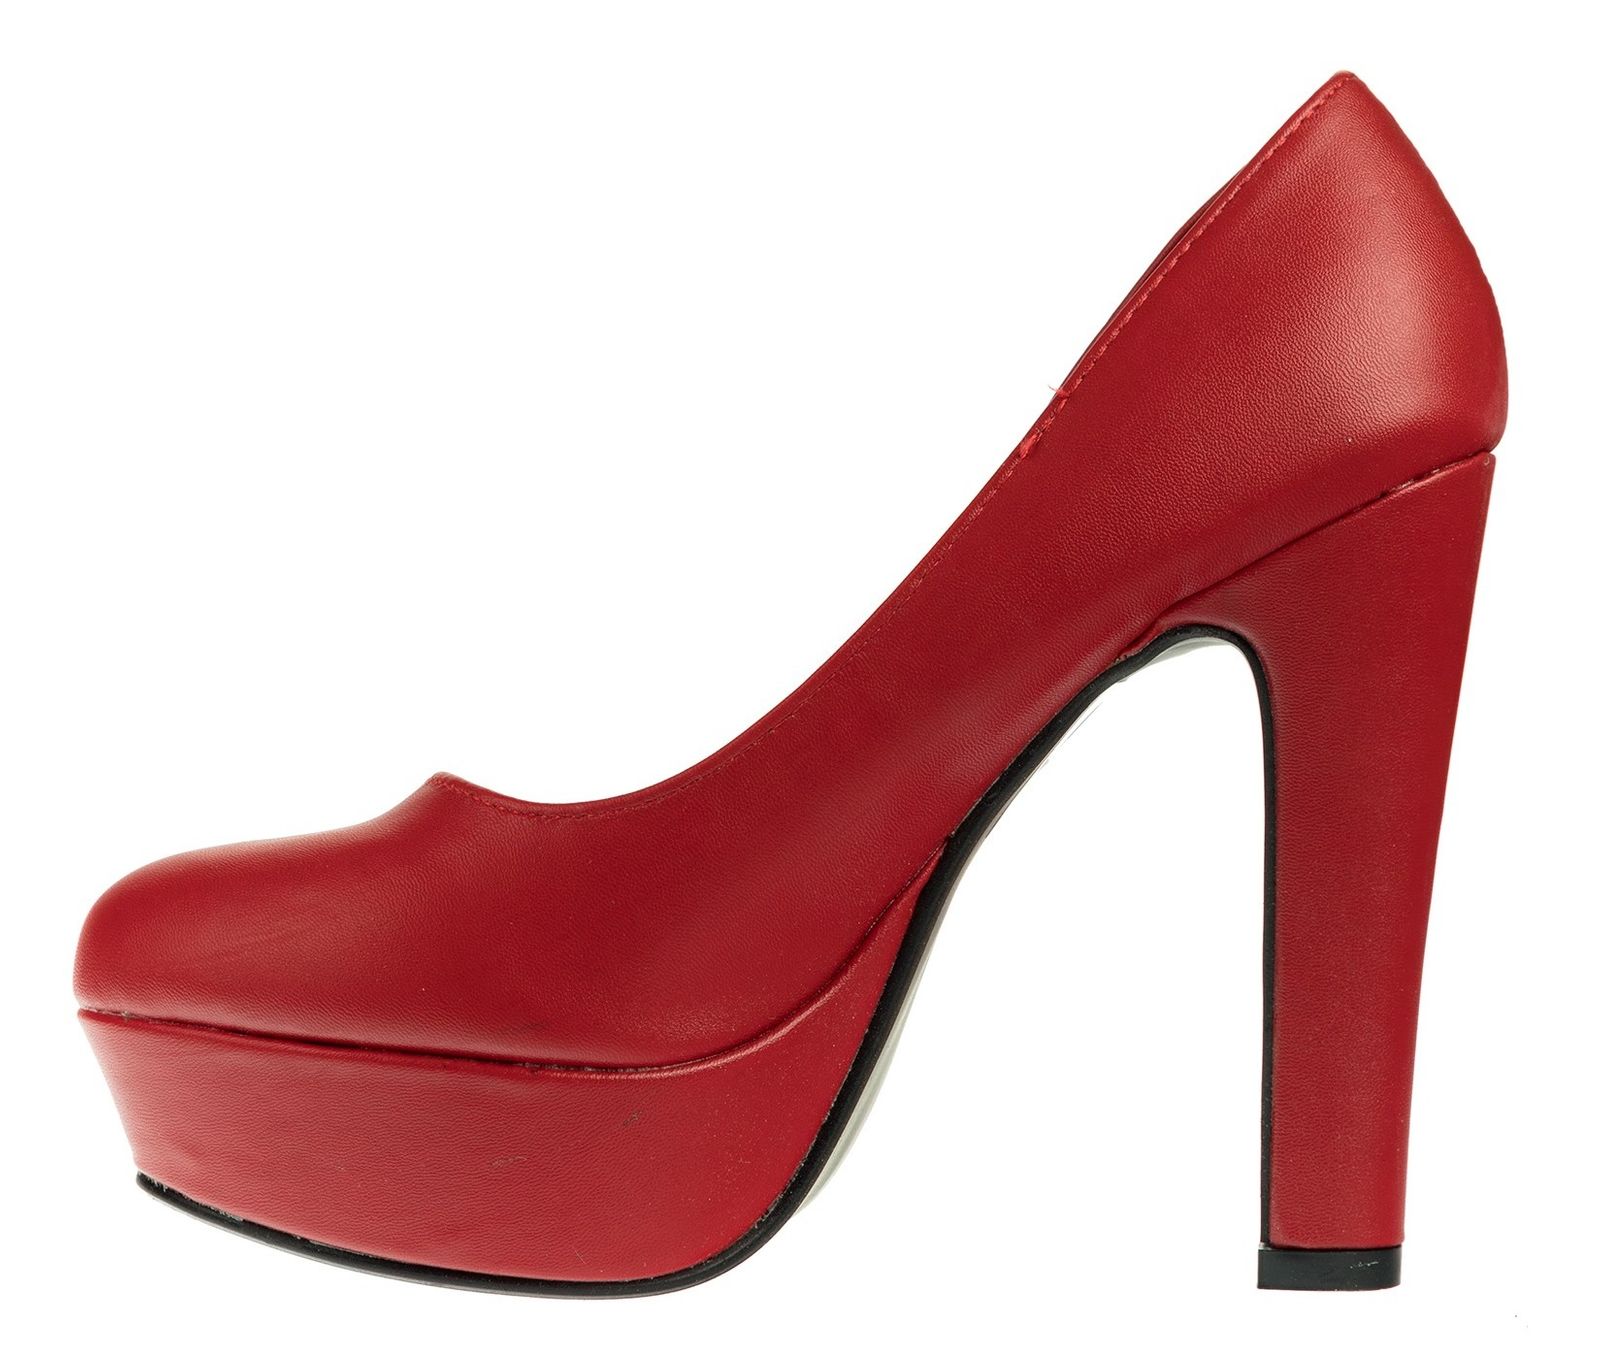 کفش پاشنه بلند زنانه - مادام - قرمز - 4